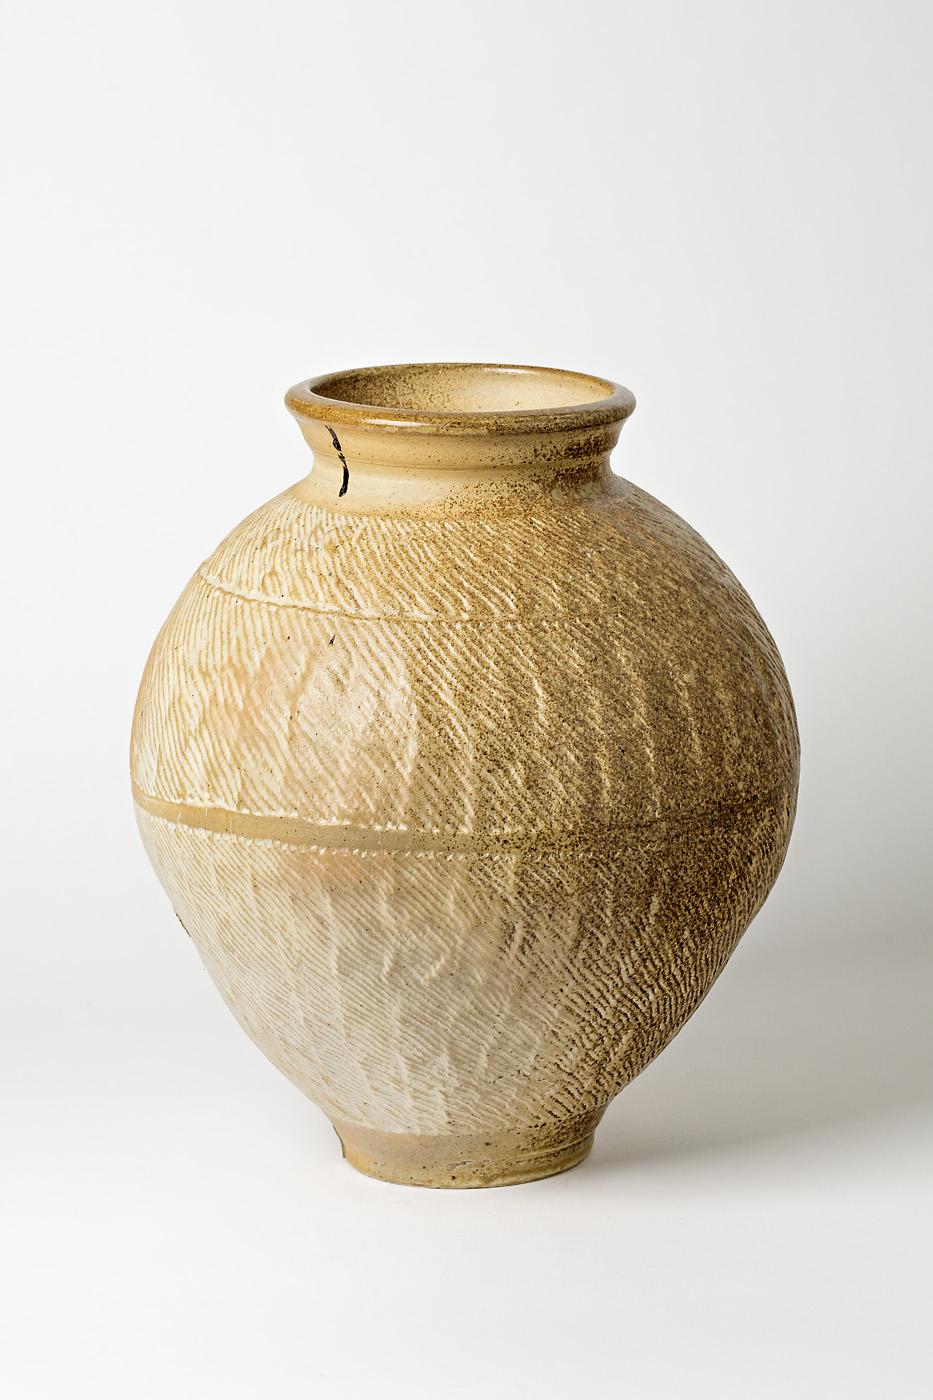 Élégant vase massif en céramique.

Signé par Steen Kepp. Réalisé, vers 1975.

Magnifiques effets de cuisson de la céramique et couleur de la glaçure blanche de la céramique.

Vase en poterie très massif.

Dimensions : 40 x 30 x 30cm.